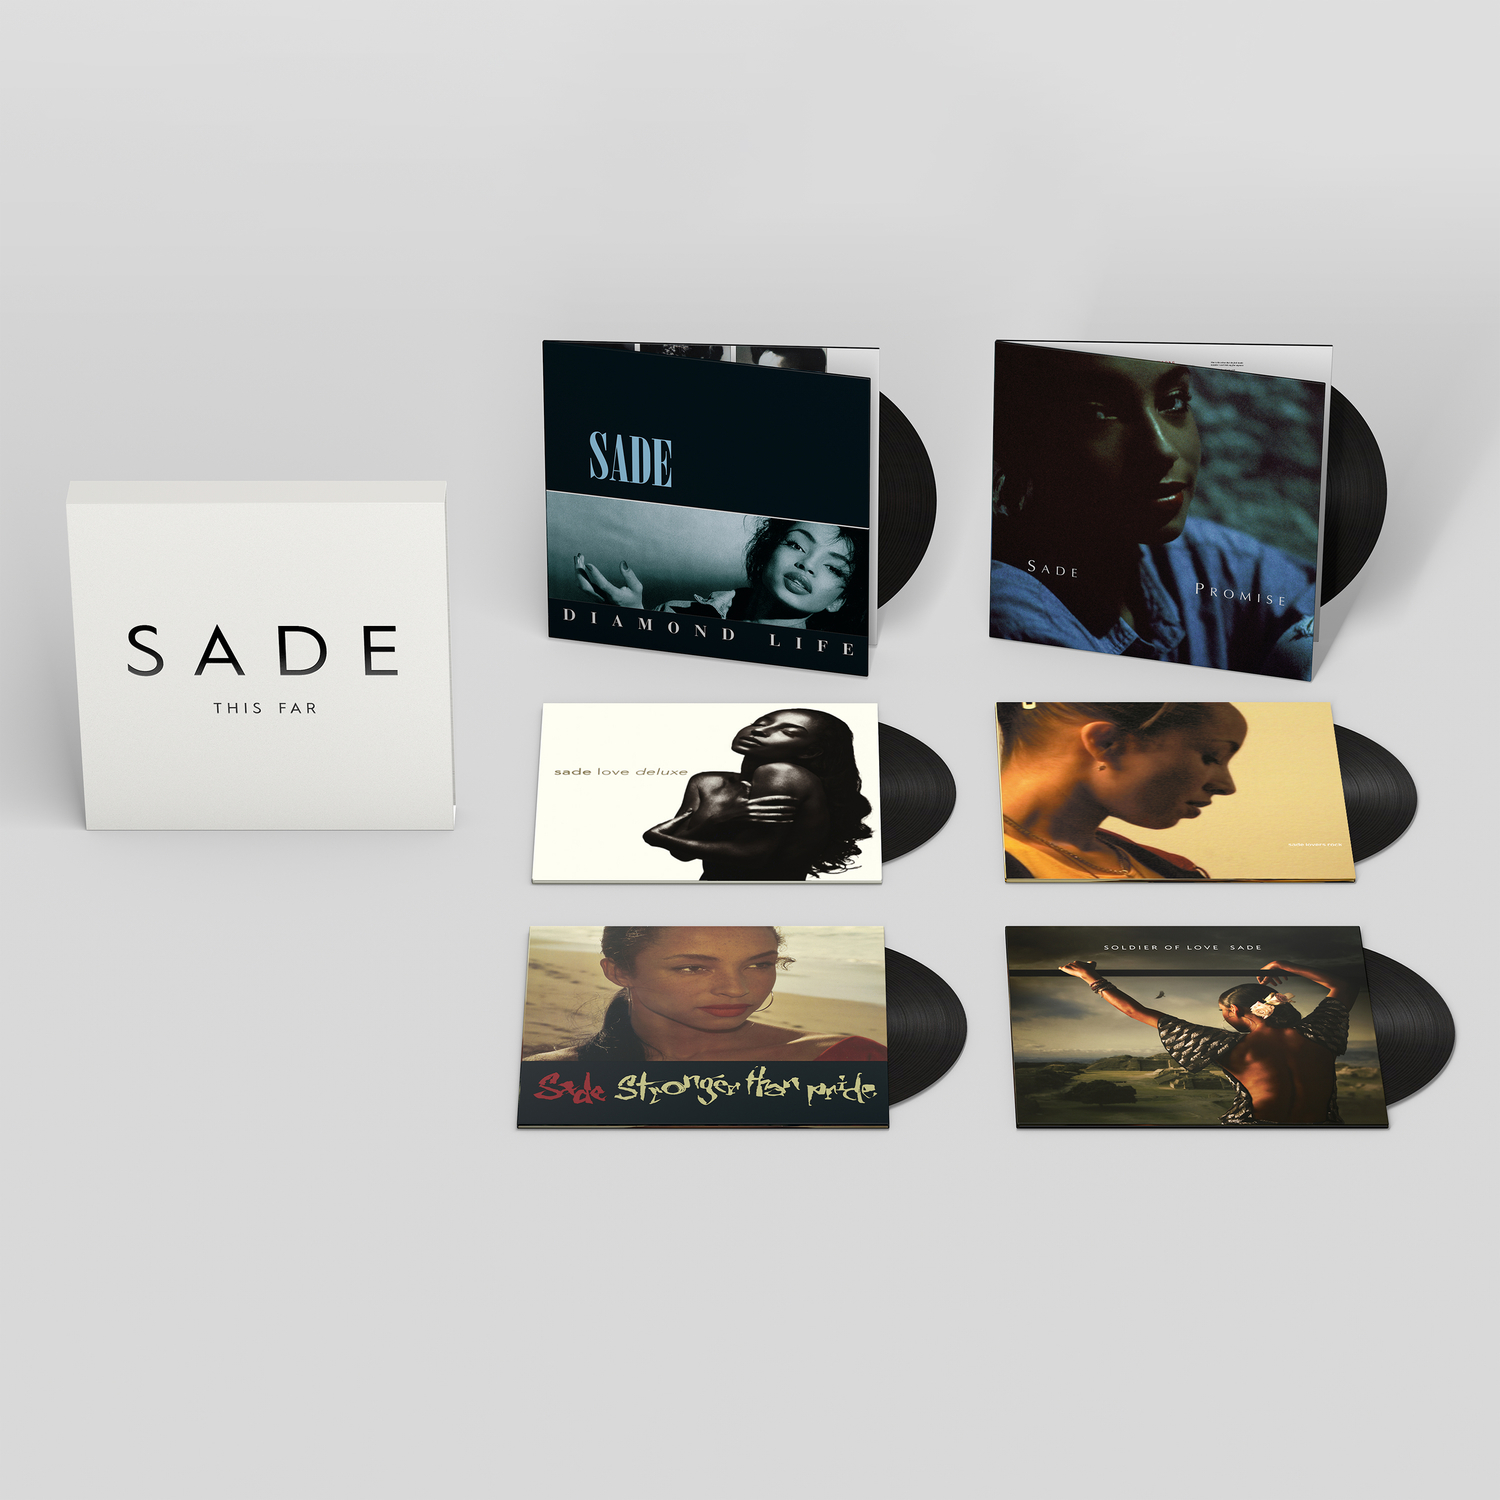 Sade - This Far - 6 Lp 180 Gr. Numbered Ltd.Ed. Boxset 889854561215 | eBay